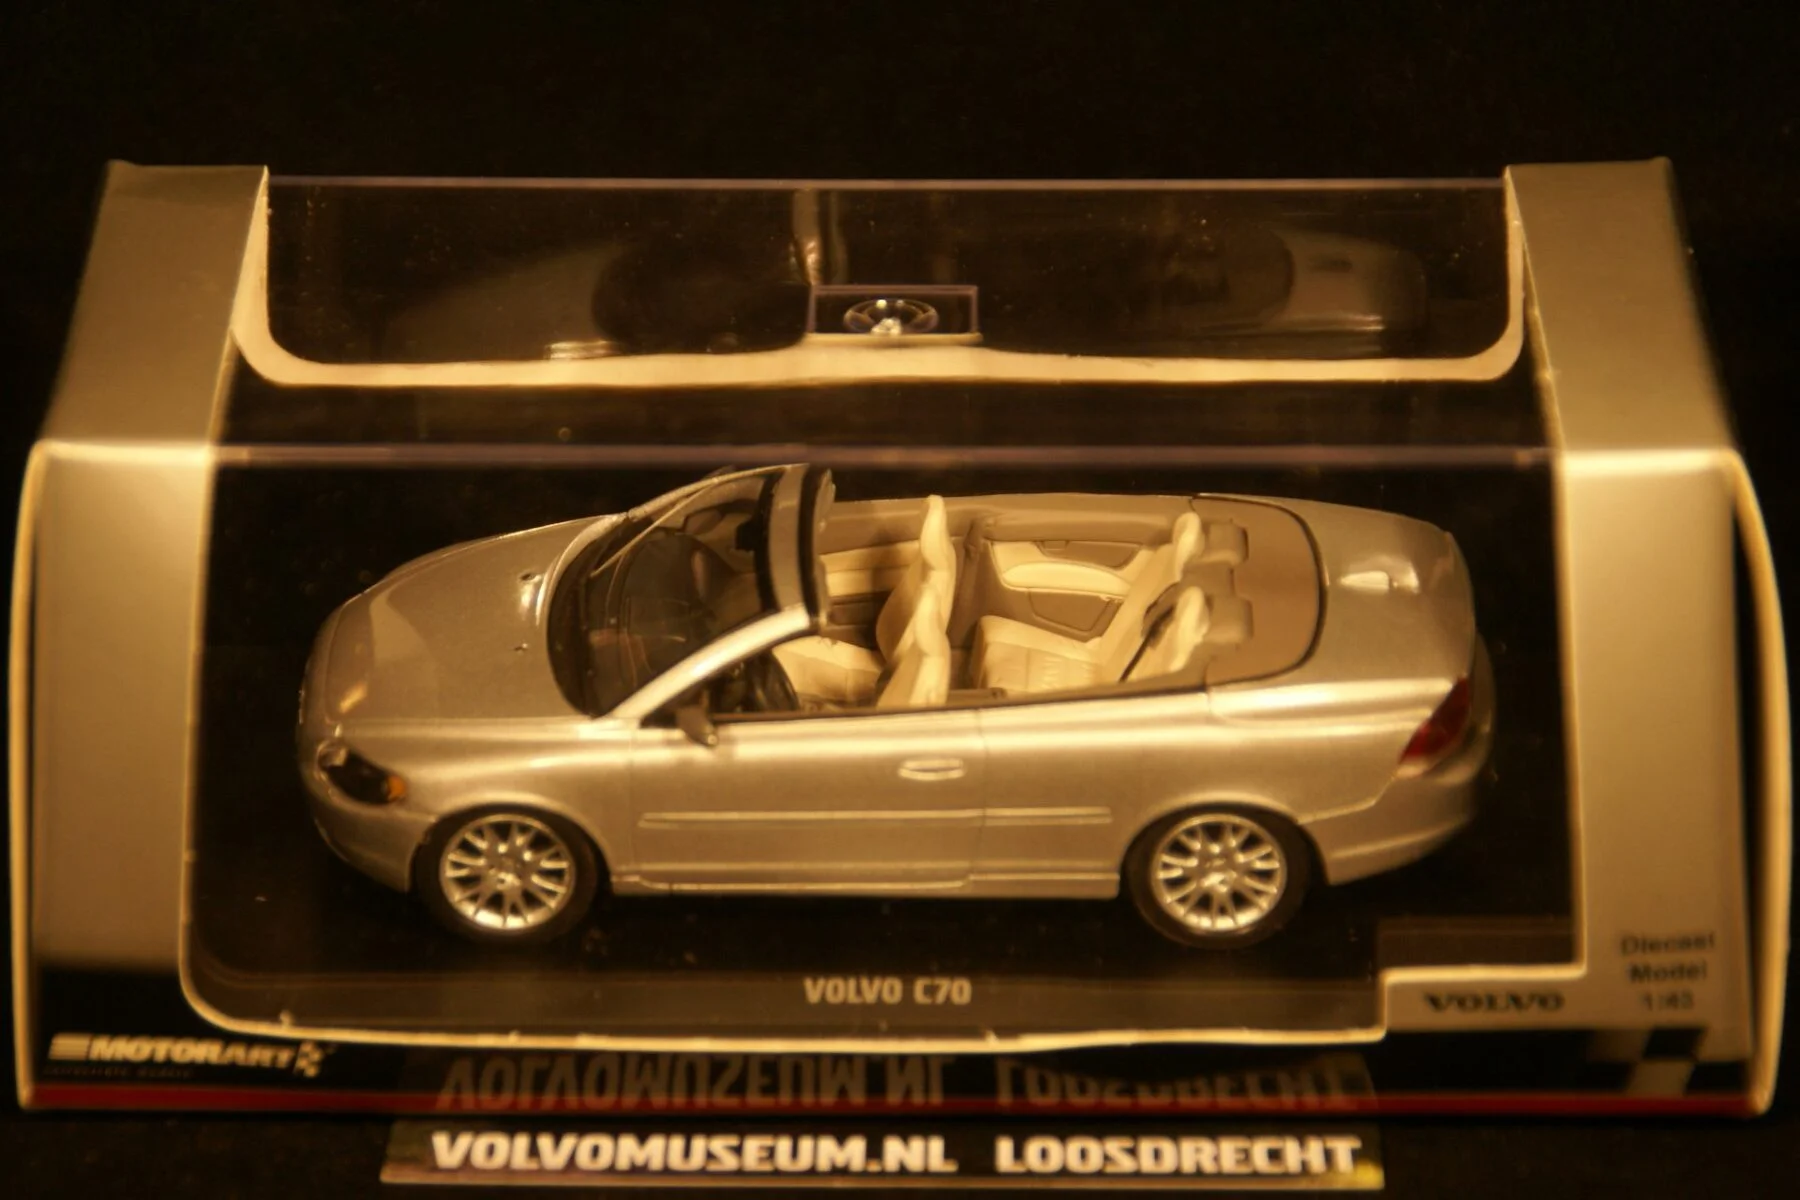 DSC02339 miniatuur Volvo C70 cabriolet zilvermet 1op43 Motorart VFL1230 MB